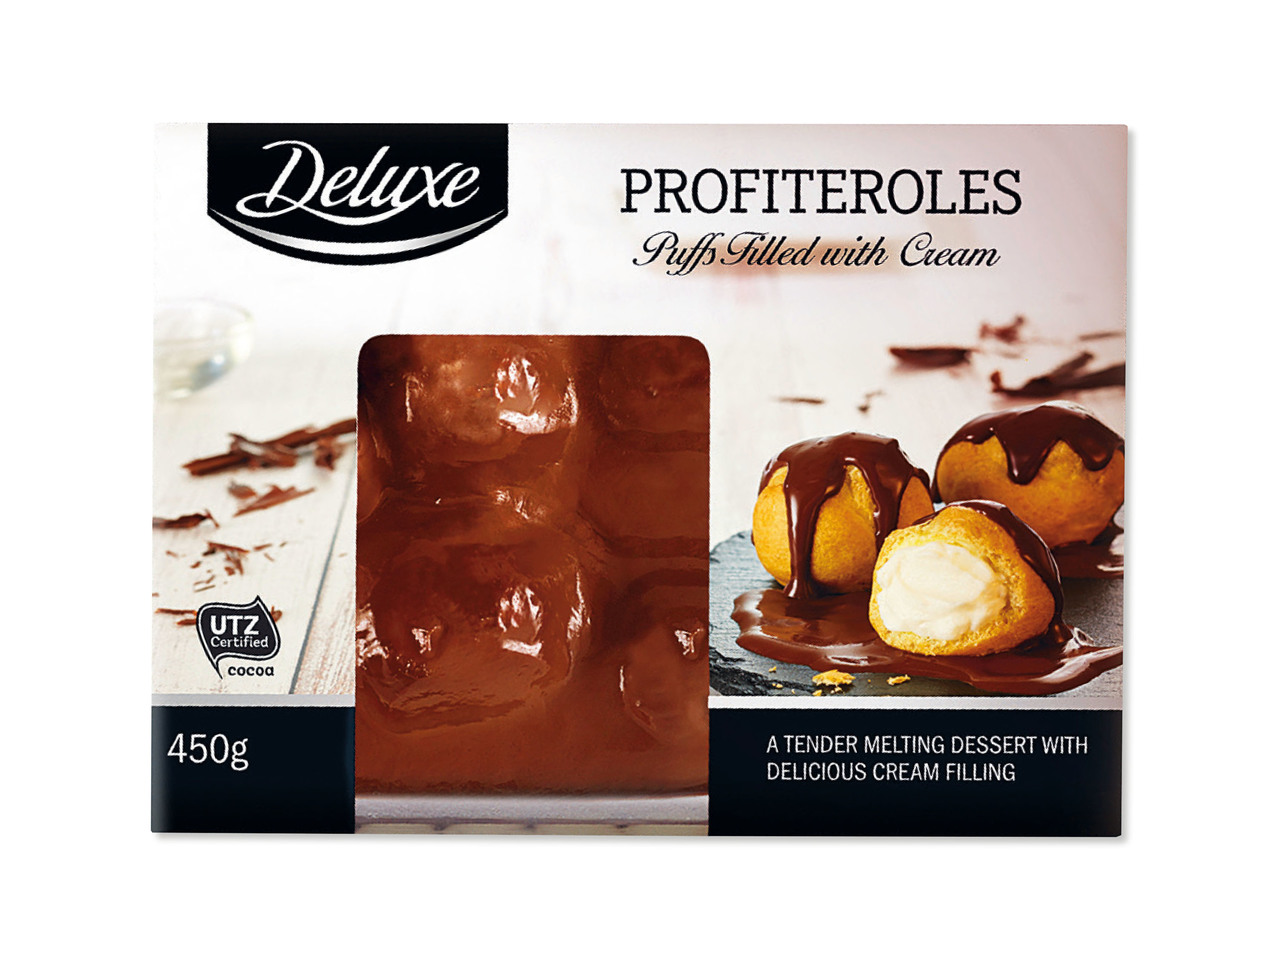 DELUXE(R) Profiteroles Premium